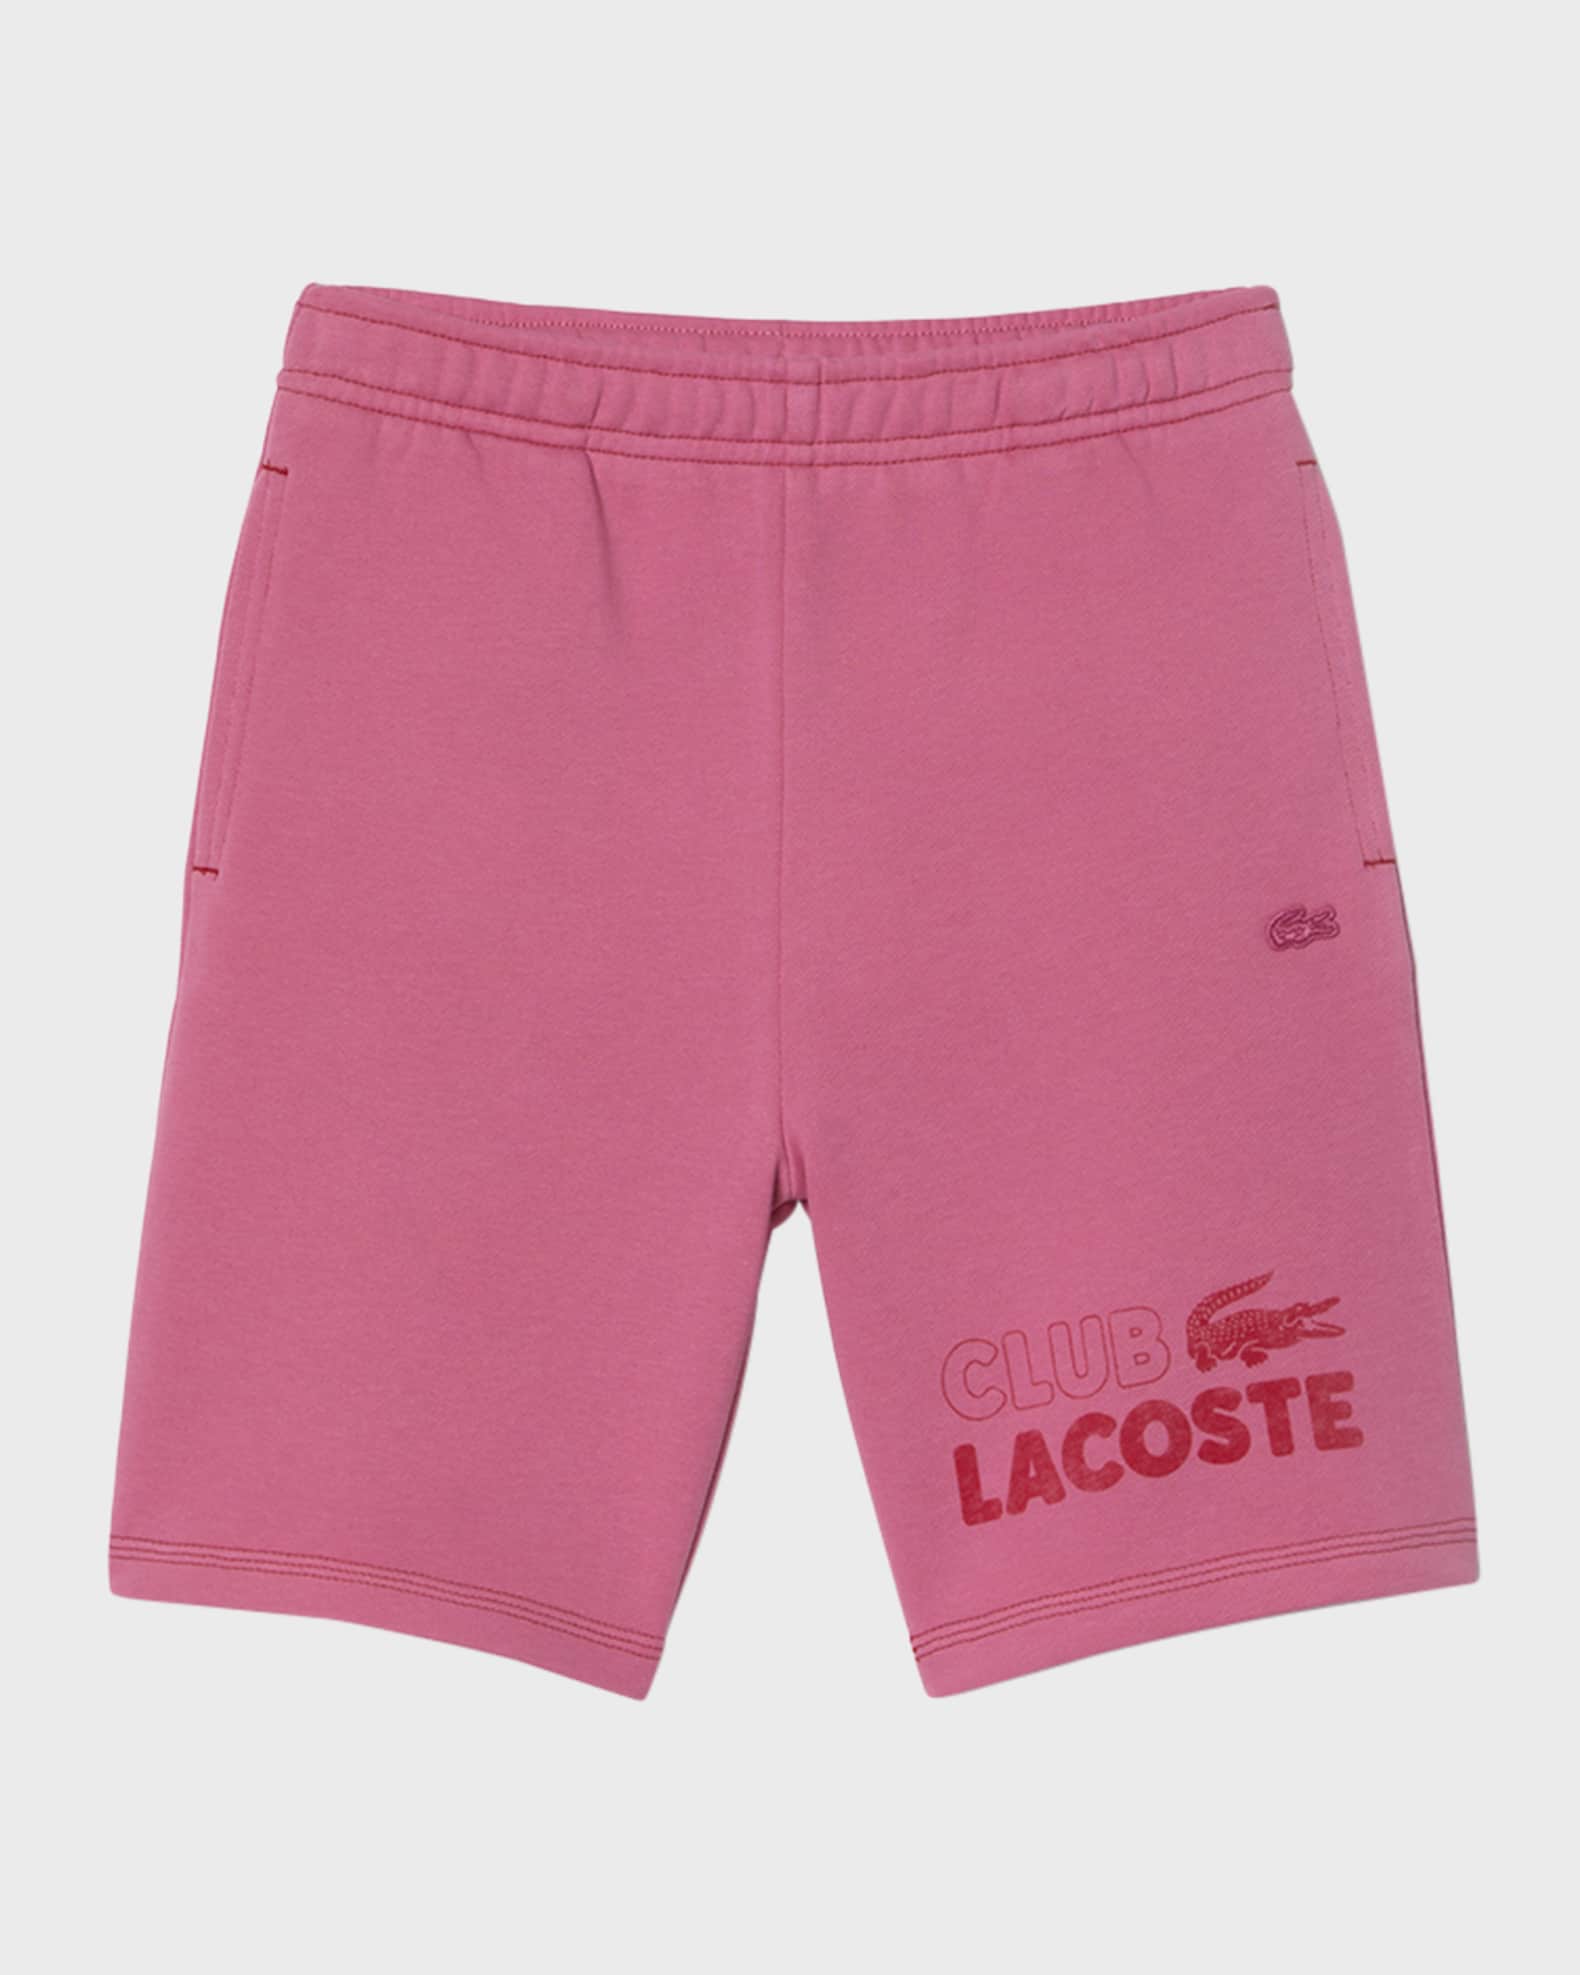 Lacoste Boy's Lacoste Club Fleece Shorts, 4-6 | Neiman